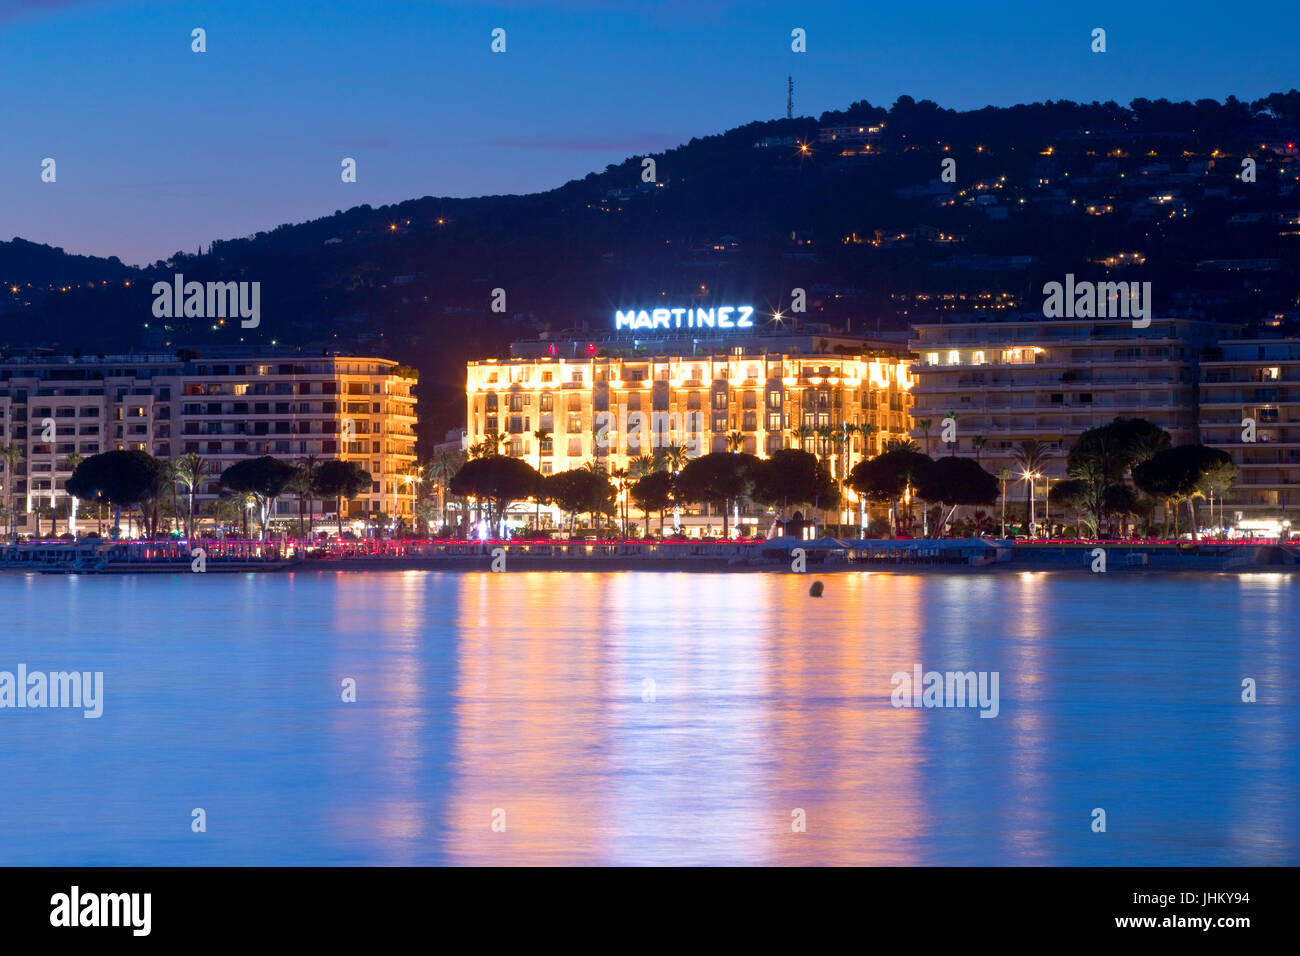 Il famoso hotel Martinez alla Promenade de la Croisette, Cannes, Francia al crepuscolo Foto Stock